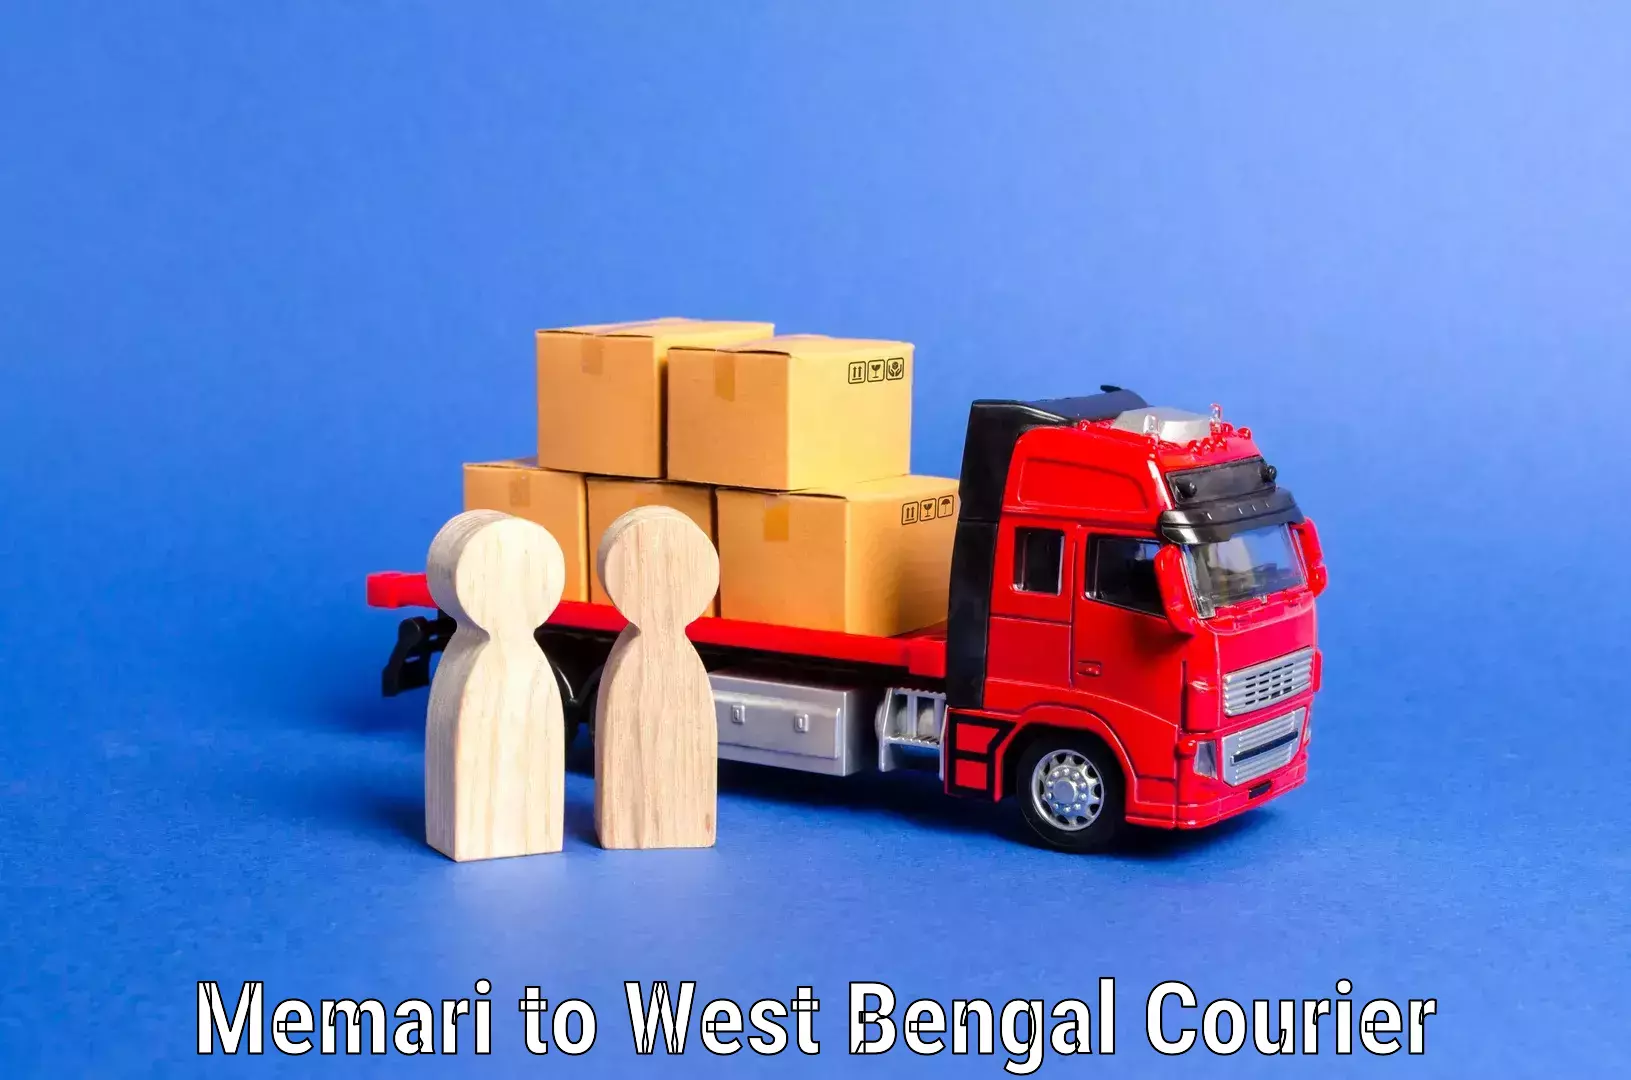 Stress-free furniture moving Memari to West Bengal